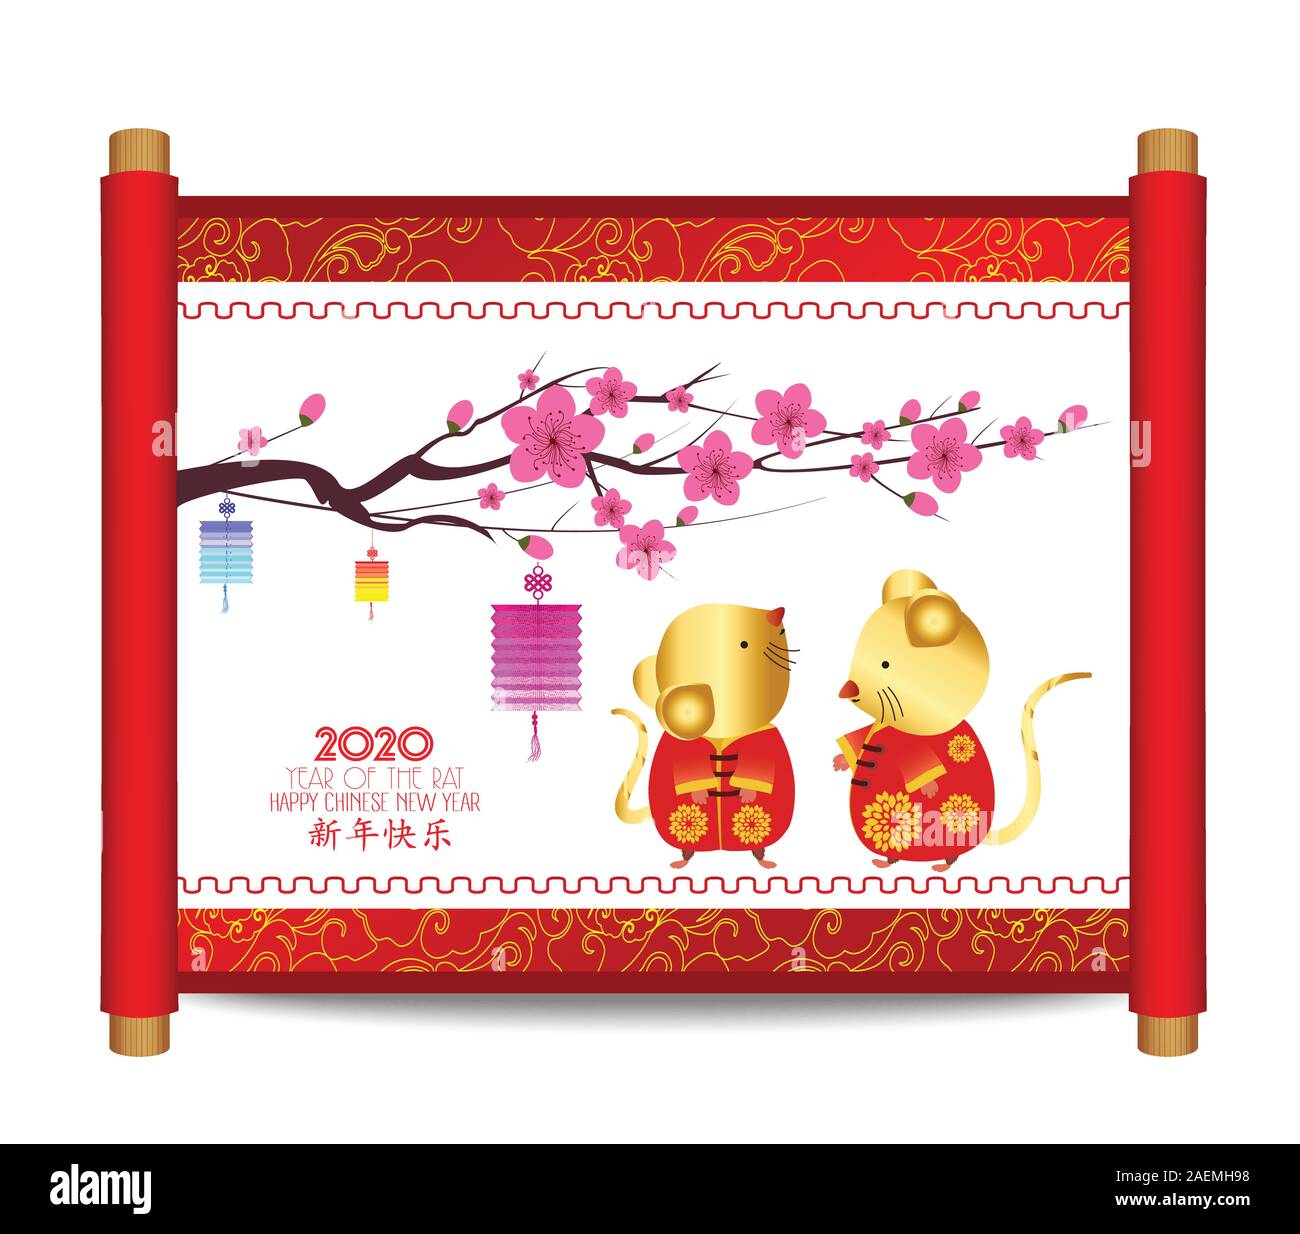 Rouleau horizontal traditionnel chinois de la peinture. L'année 2020 du rat. Le Nouvel An chinois. Bonne année de traduction Illustration de Vecteur